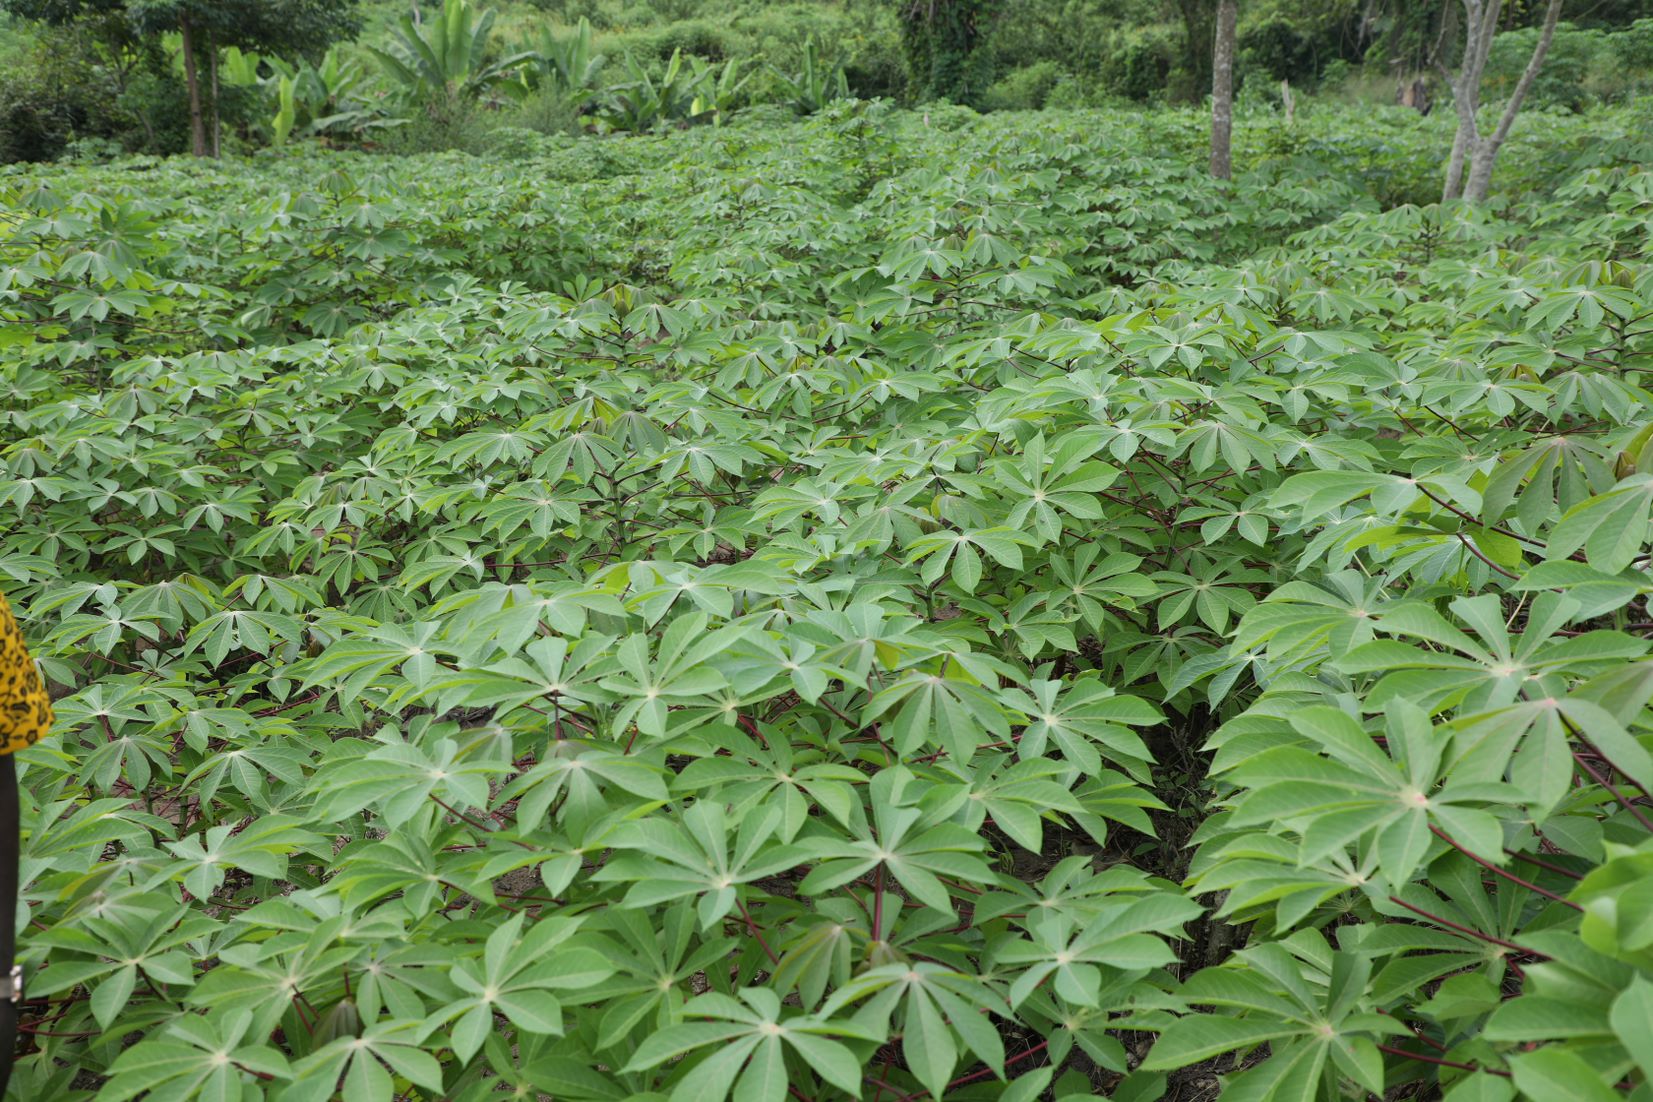 A cassava field